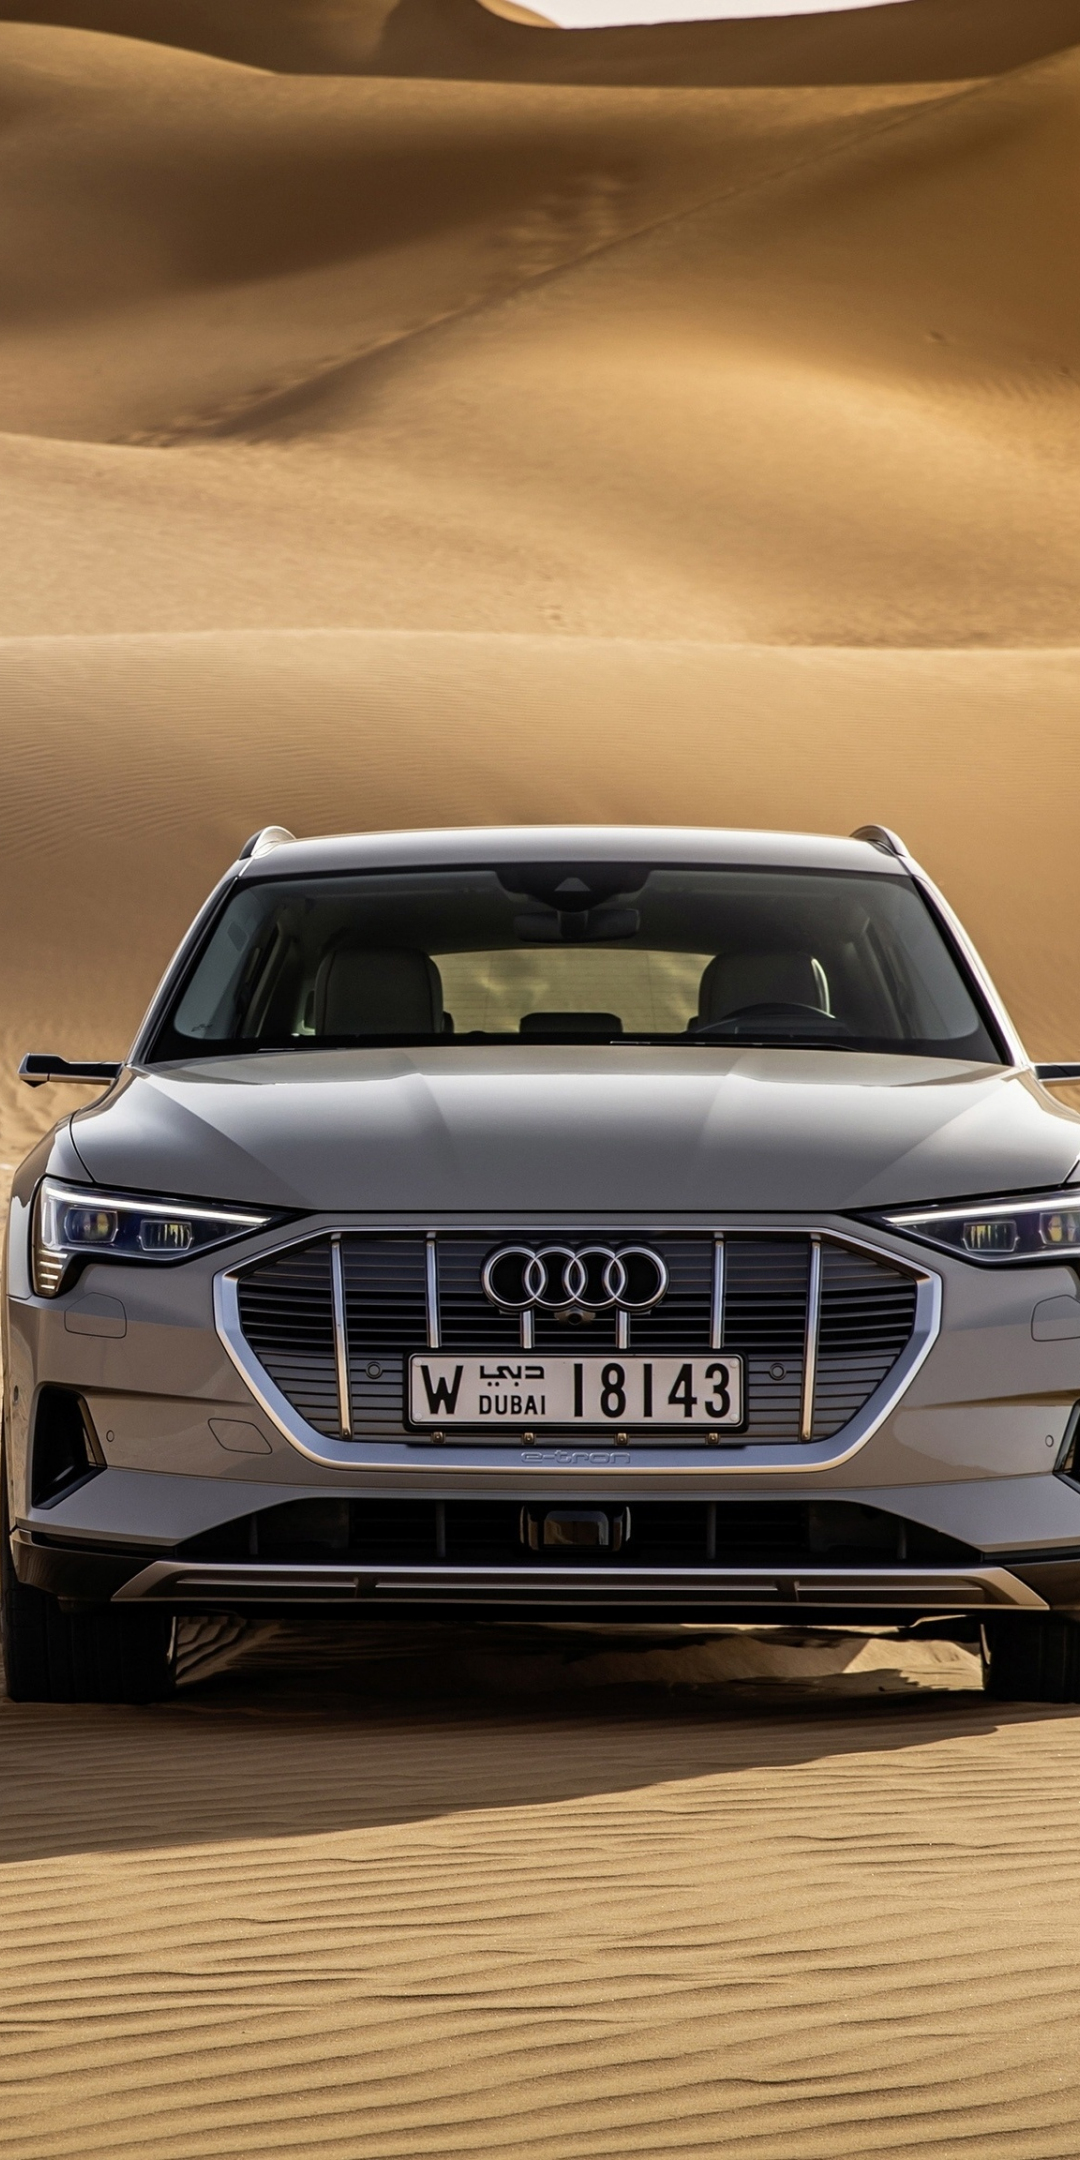 Desert, off-road, Audi e-Tron Quattro, electric SUV, 1080x2160 wallpaper